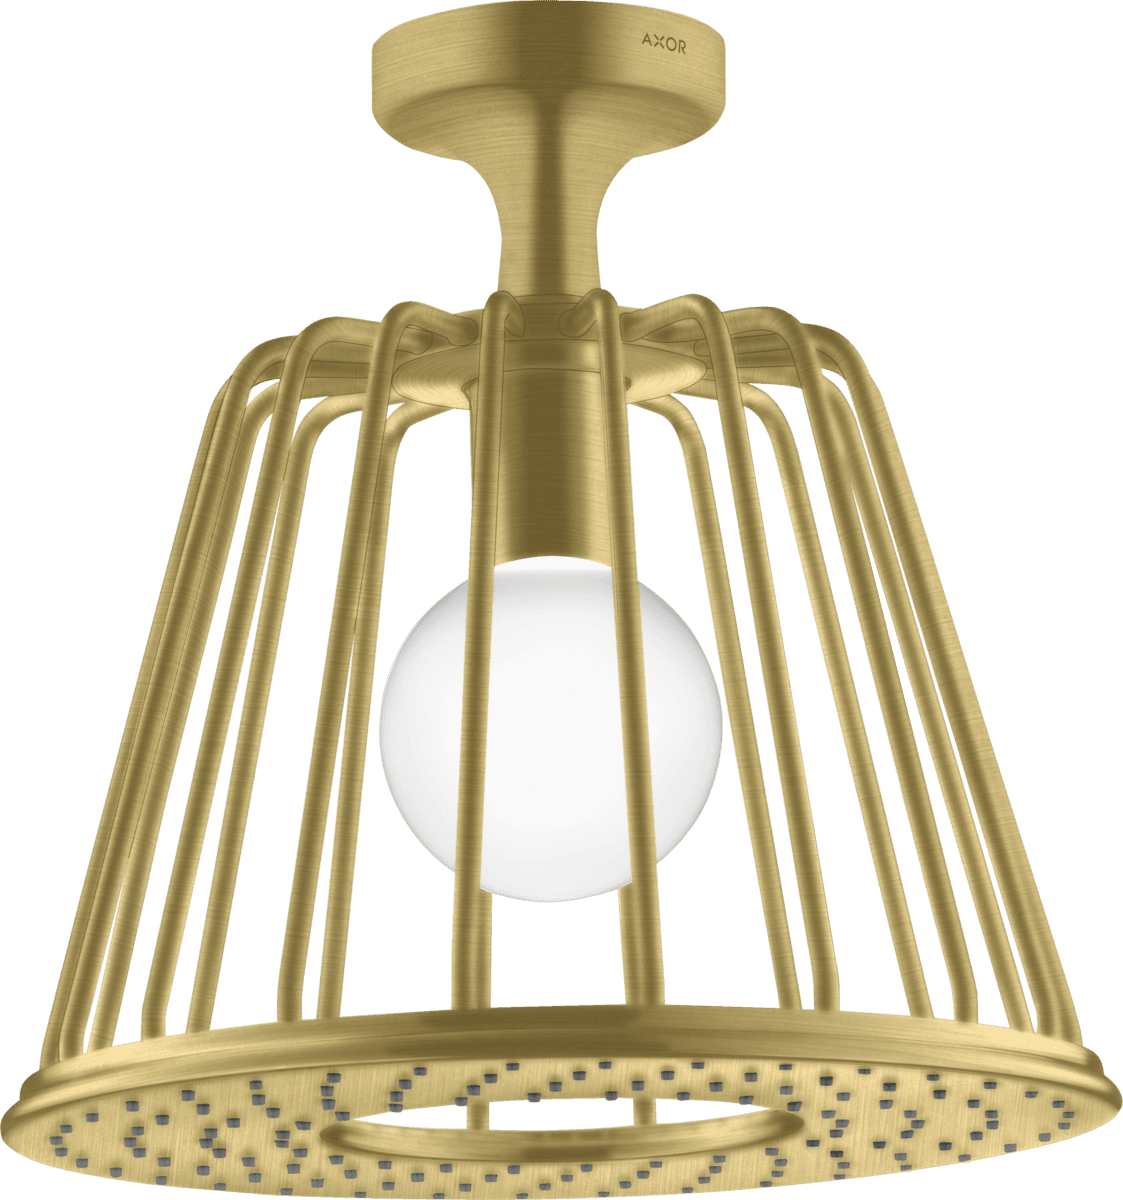 εικόνα του HANSGROHE AXOR LampShower/Nendo LampShower 275 1jet with ceiling connector #26032950 - Brushed Brass